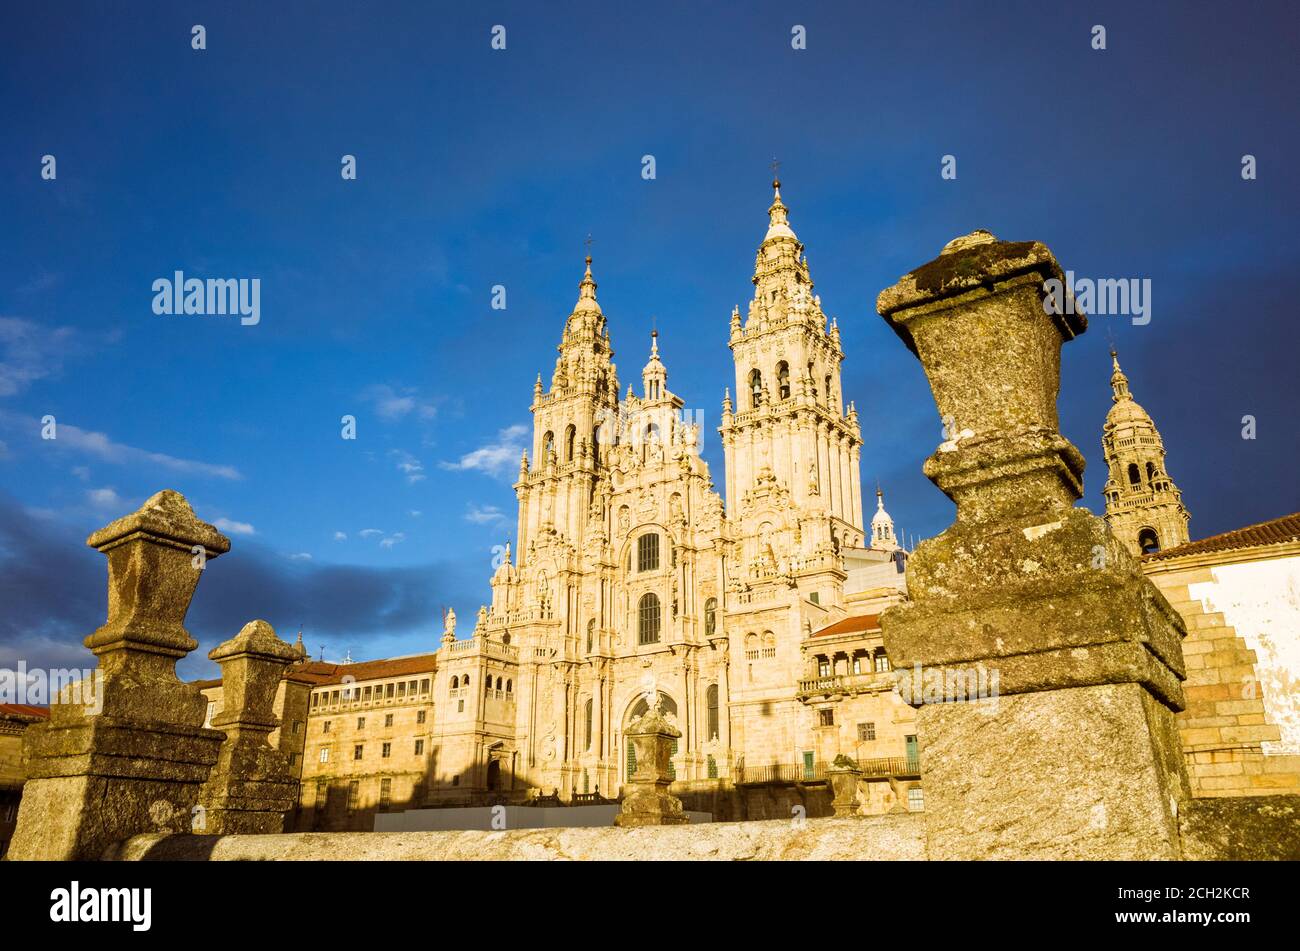 Santiago de Compostela, A Coruña province, Galicia, Spain - February 12th, 2020 : Baroque Obradoiro facade of the compostela Cathedral, the reputed bu Stock Photo